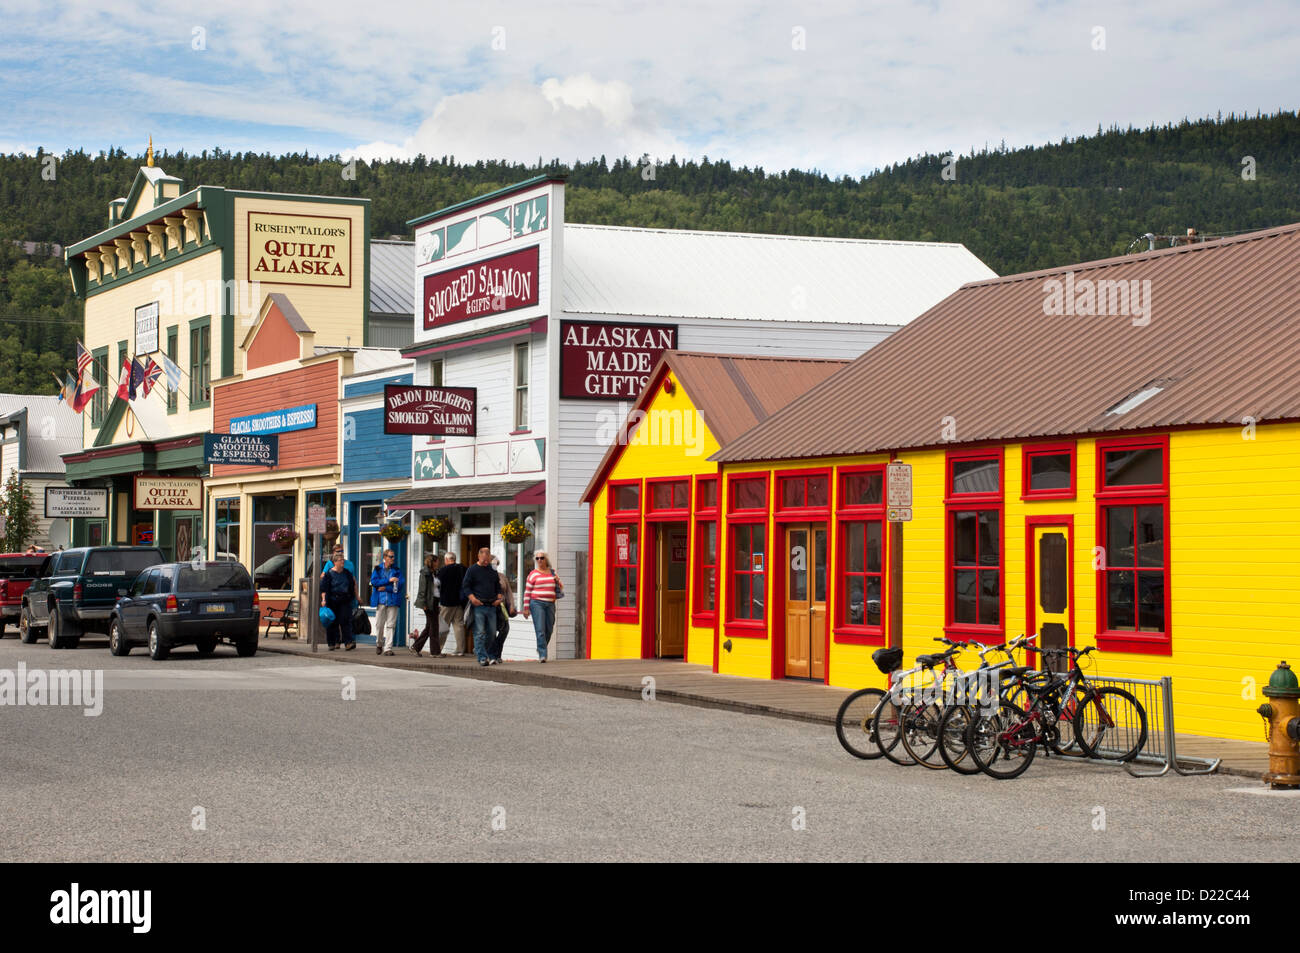 Retail stores in Skagway, Alaska, USA Stock Photo